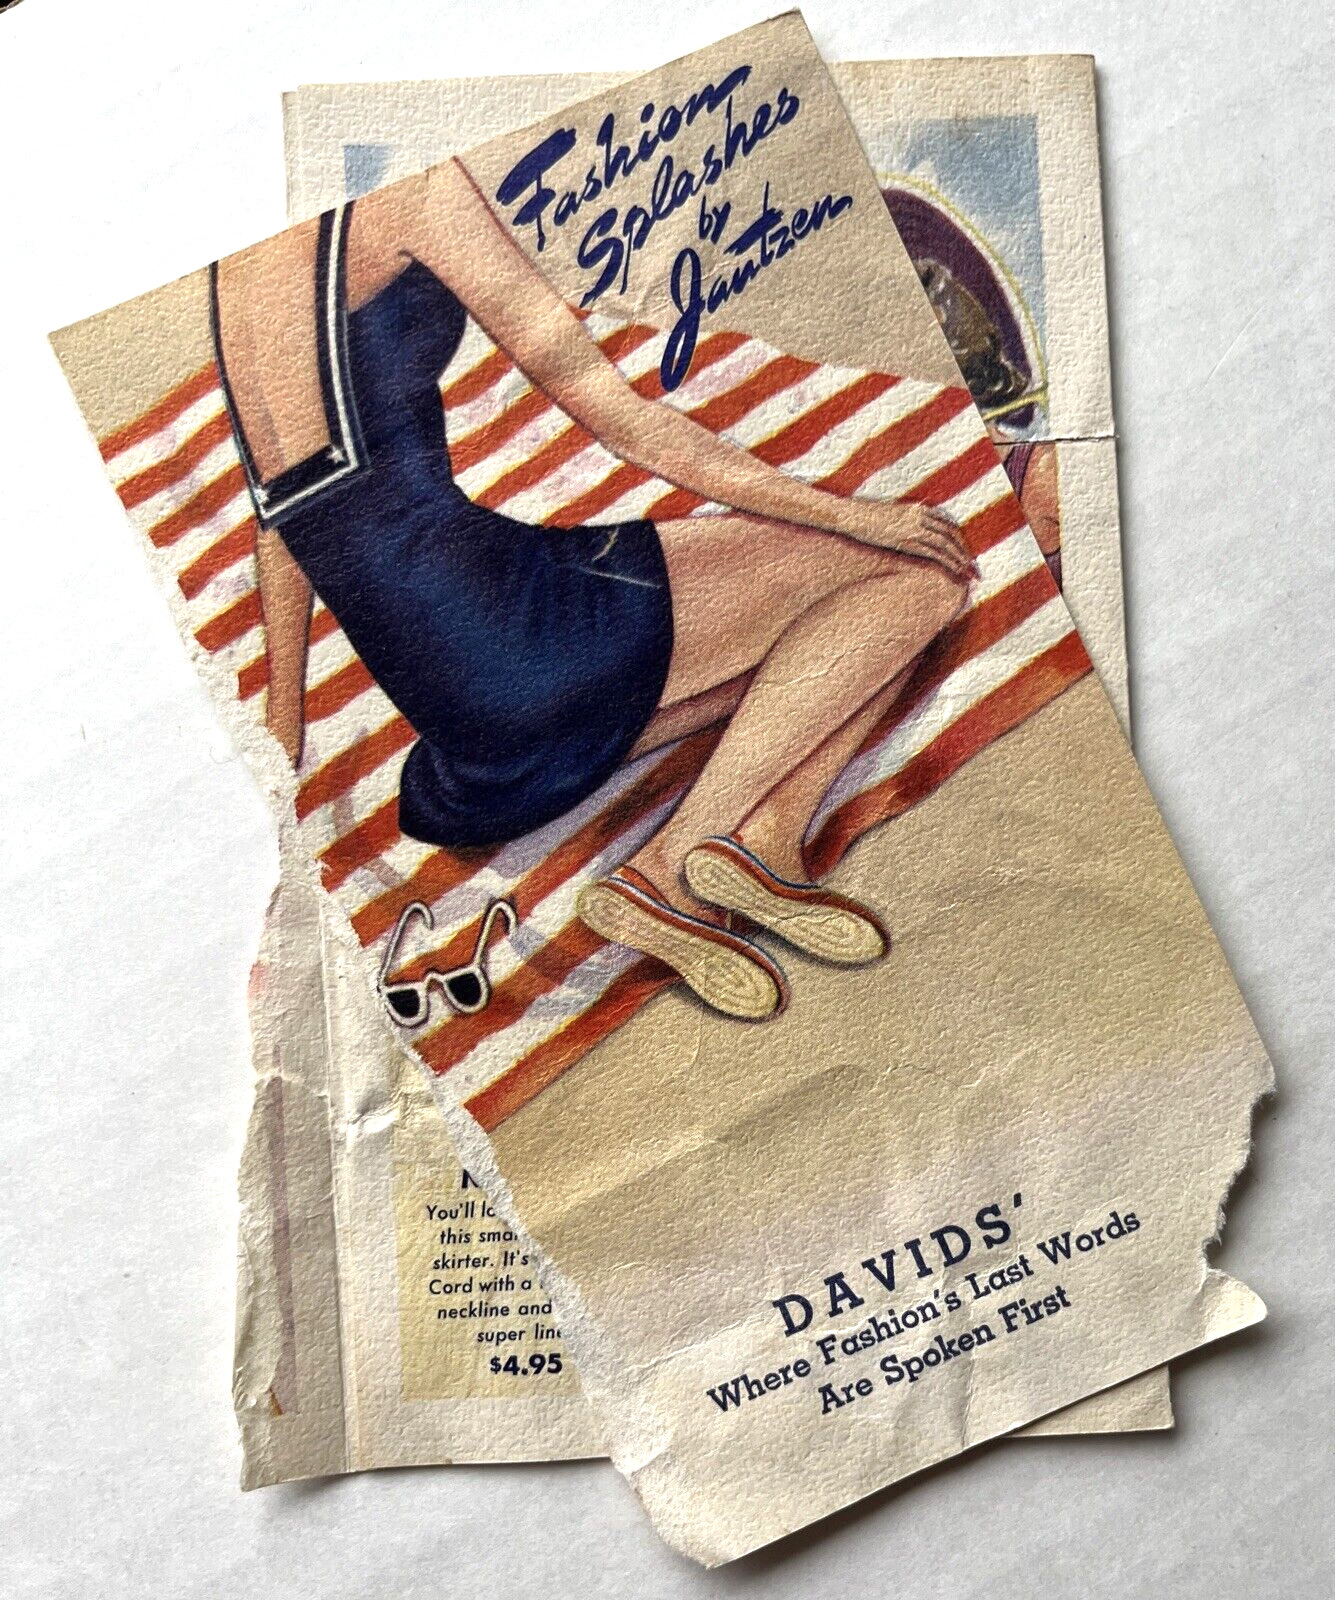 Vintage 1941 Jantzen Women Bathing Suits Full Color Ad Pamphlet 9 Gr8 Suits Poor